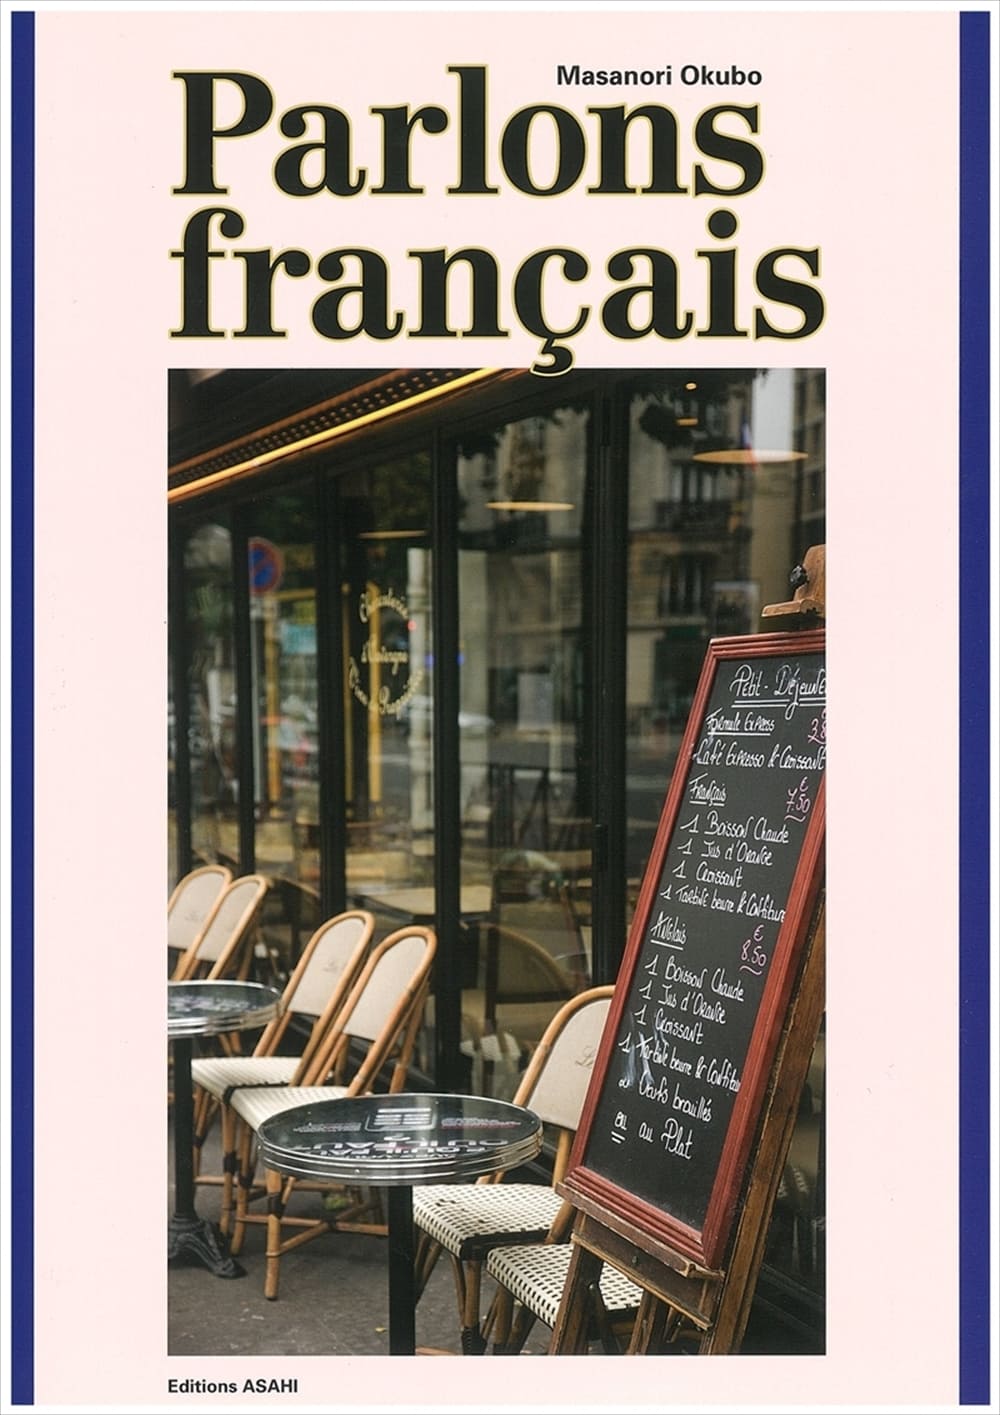 話してみようフランス語 Oui 教科書 フランス語 朝日出版社